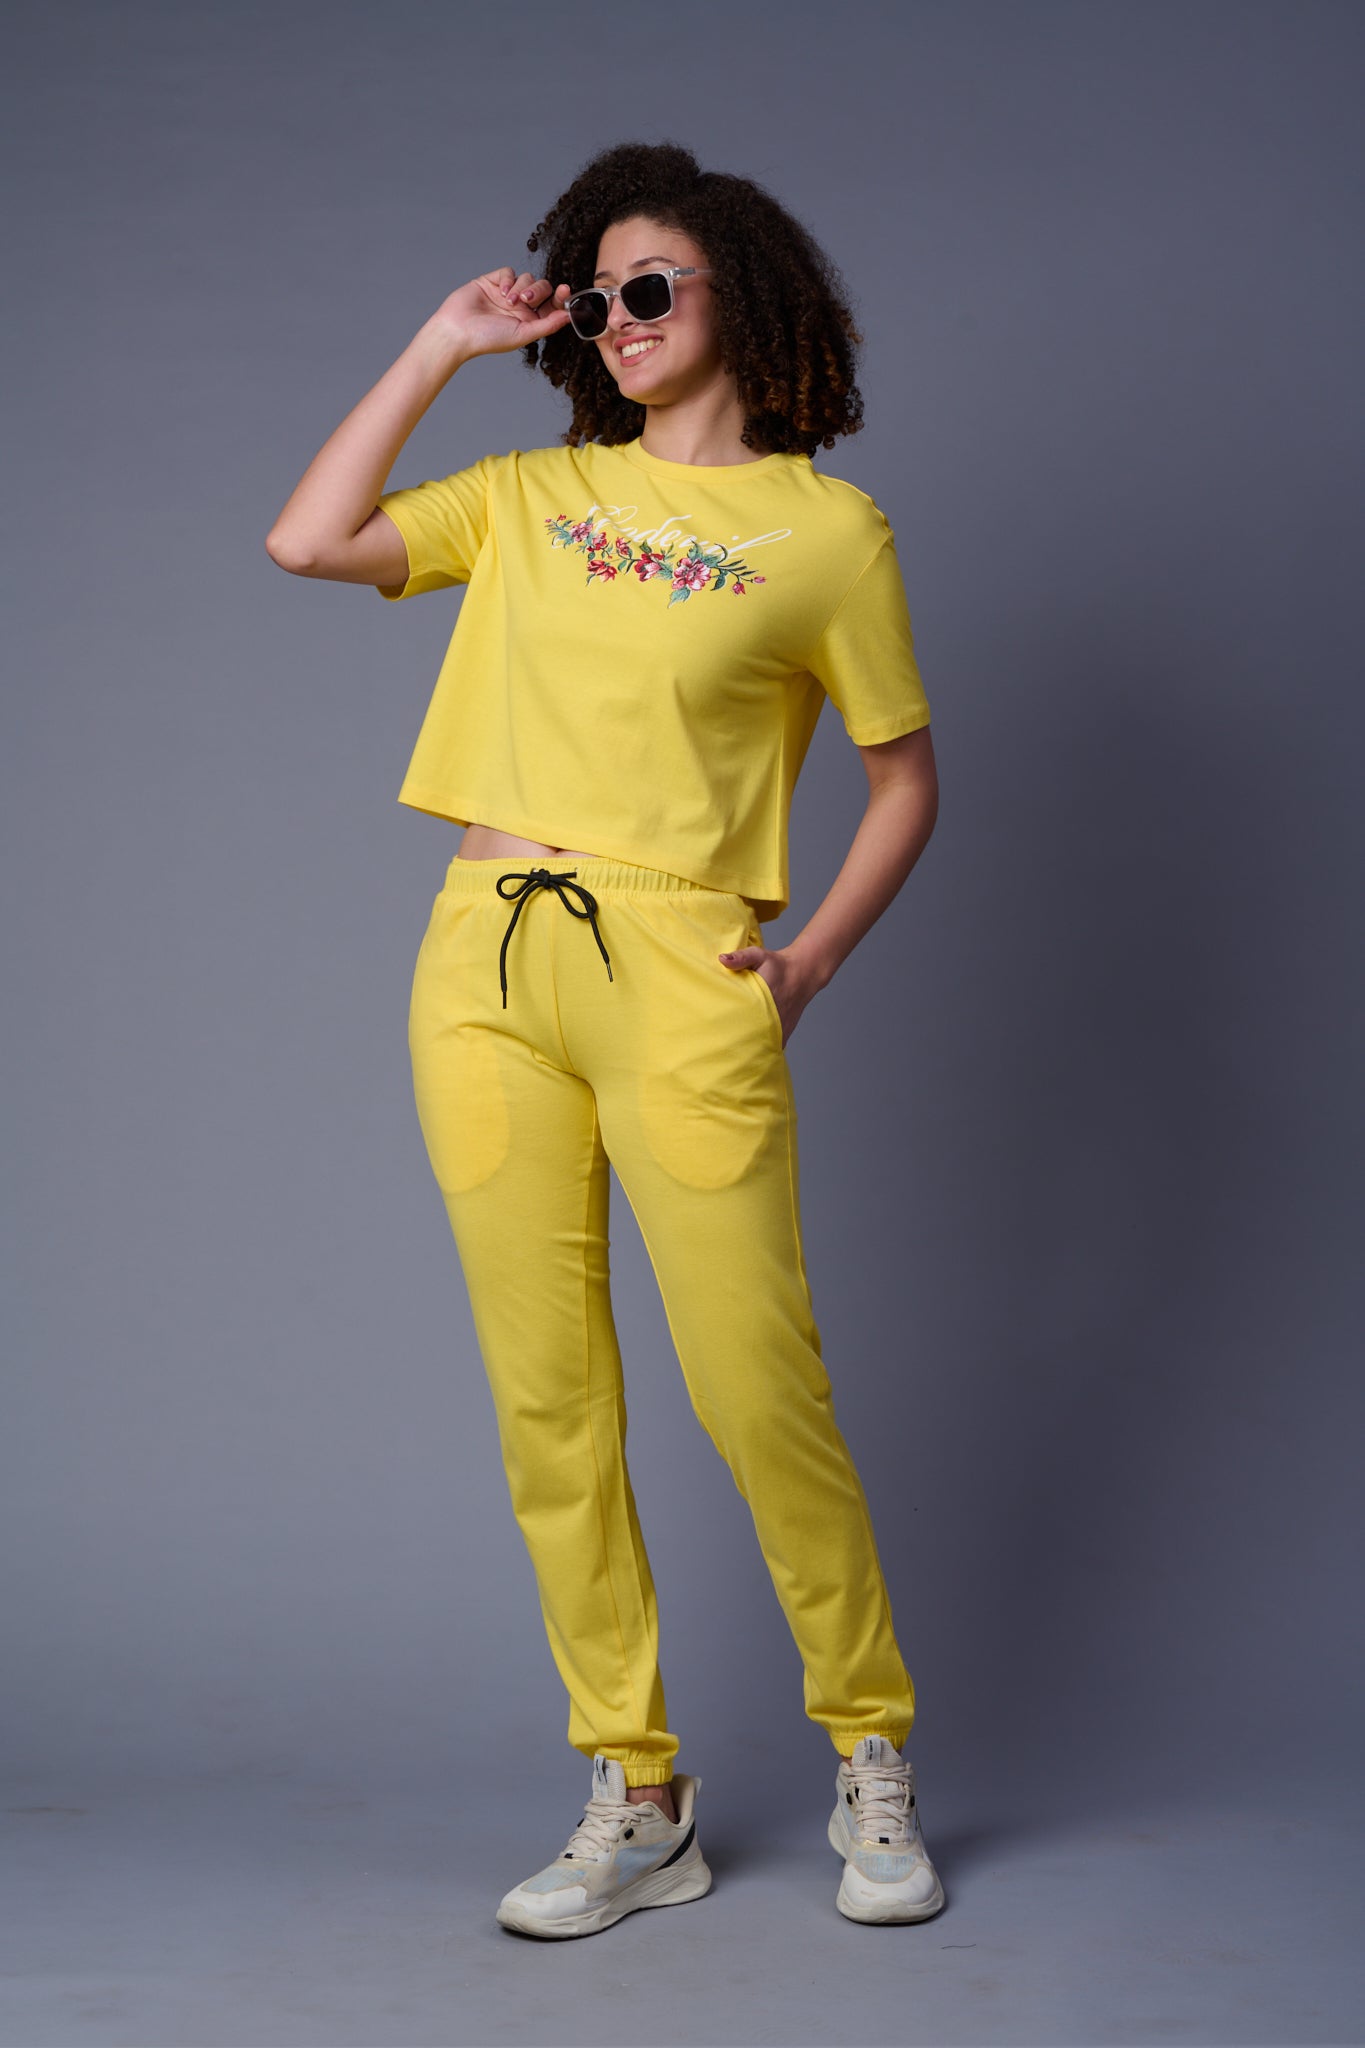 Flower Printed Lemon Yellow Full Size Co-ord Set for Women